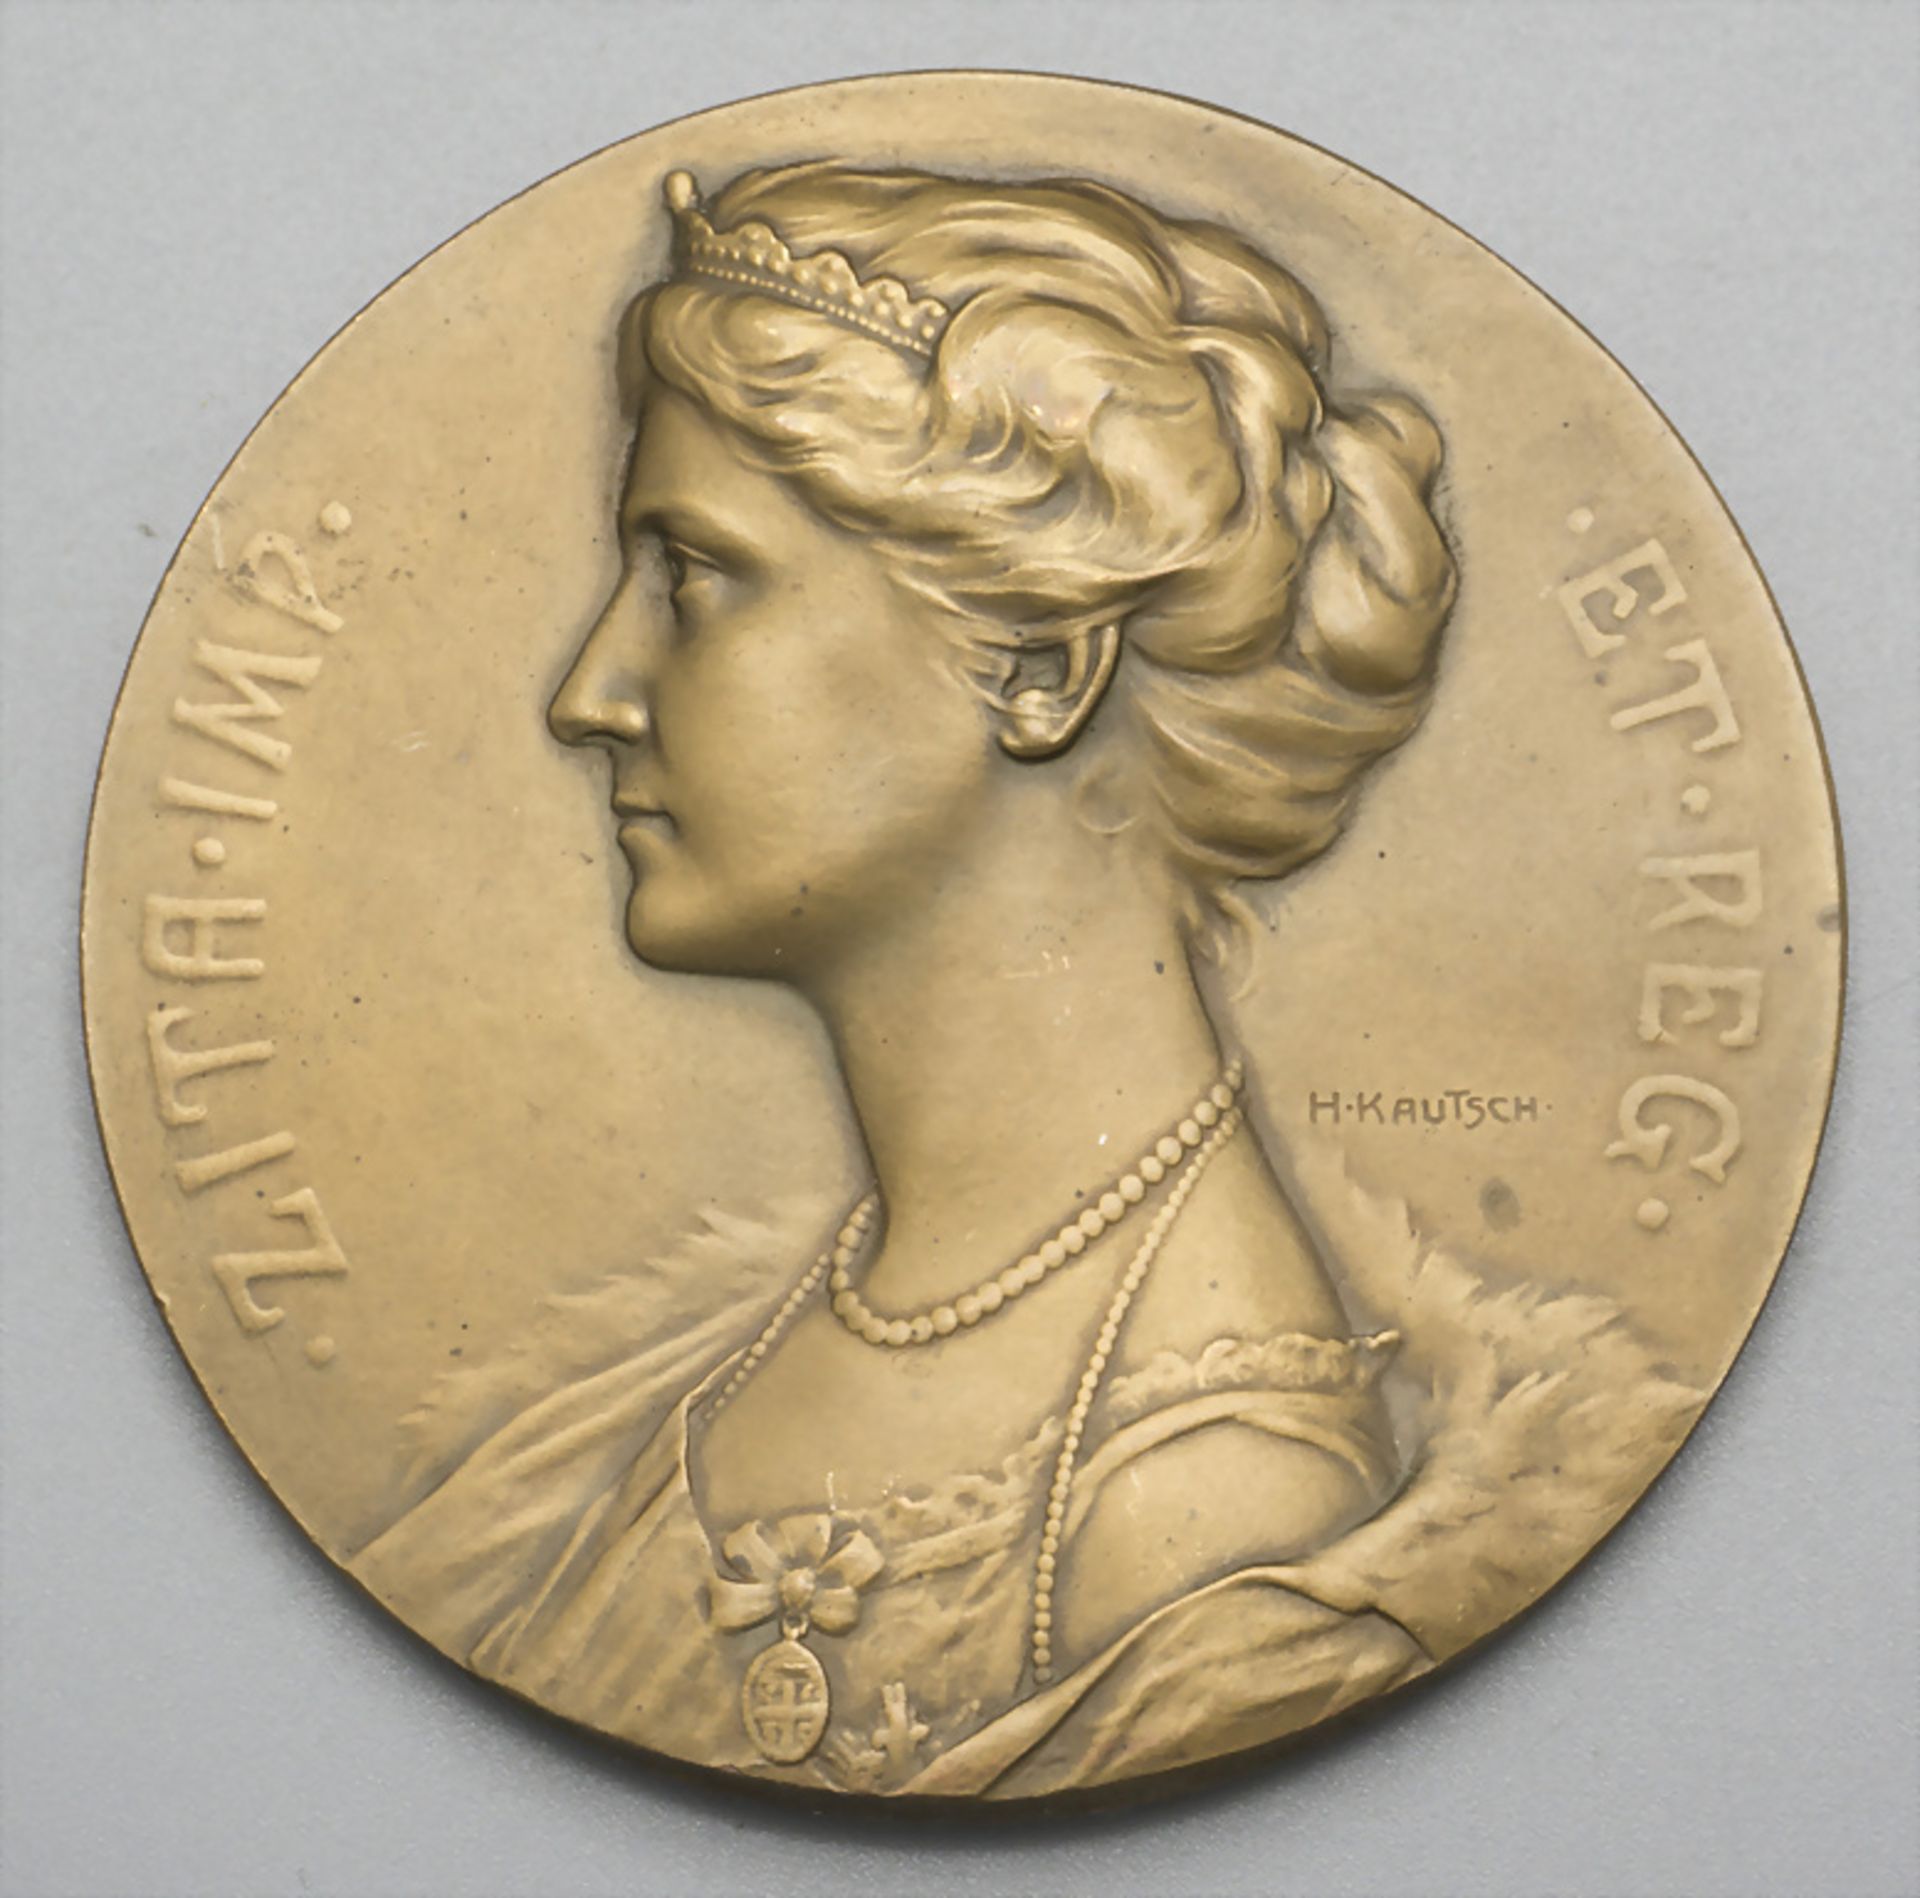 Medaille 'Zita von Bourbon-Parma' Kaiserin (Kaisergattin) von Österreich und Ungarn, 1917